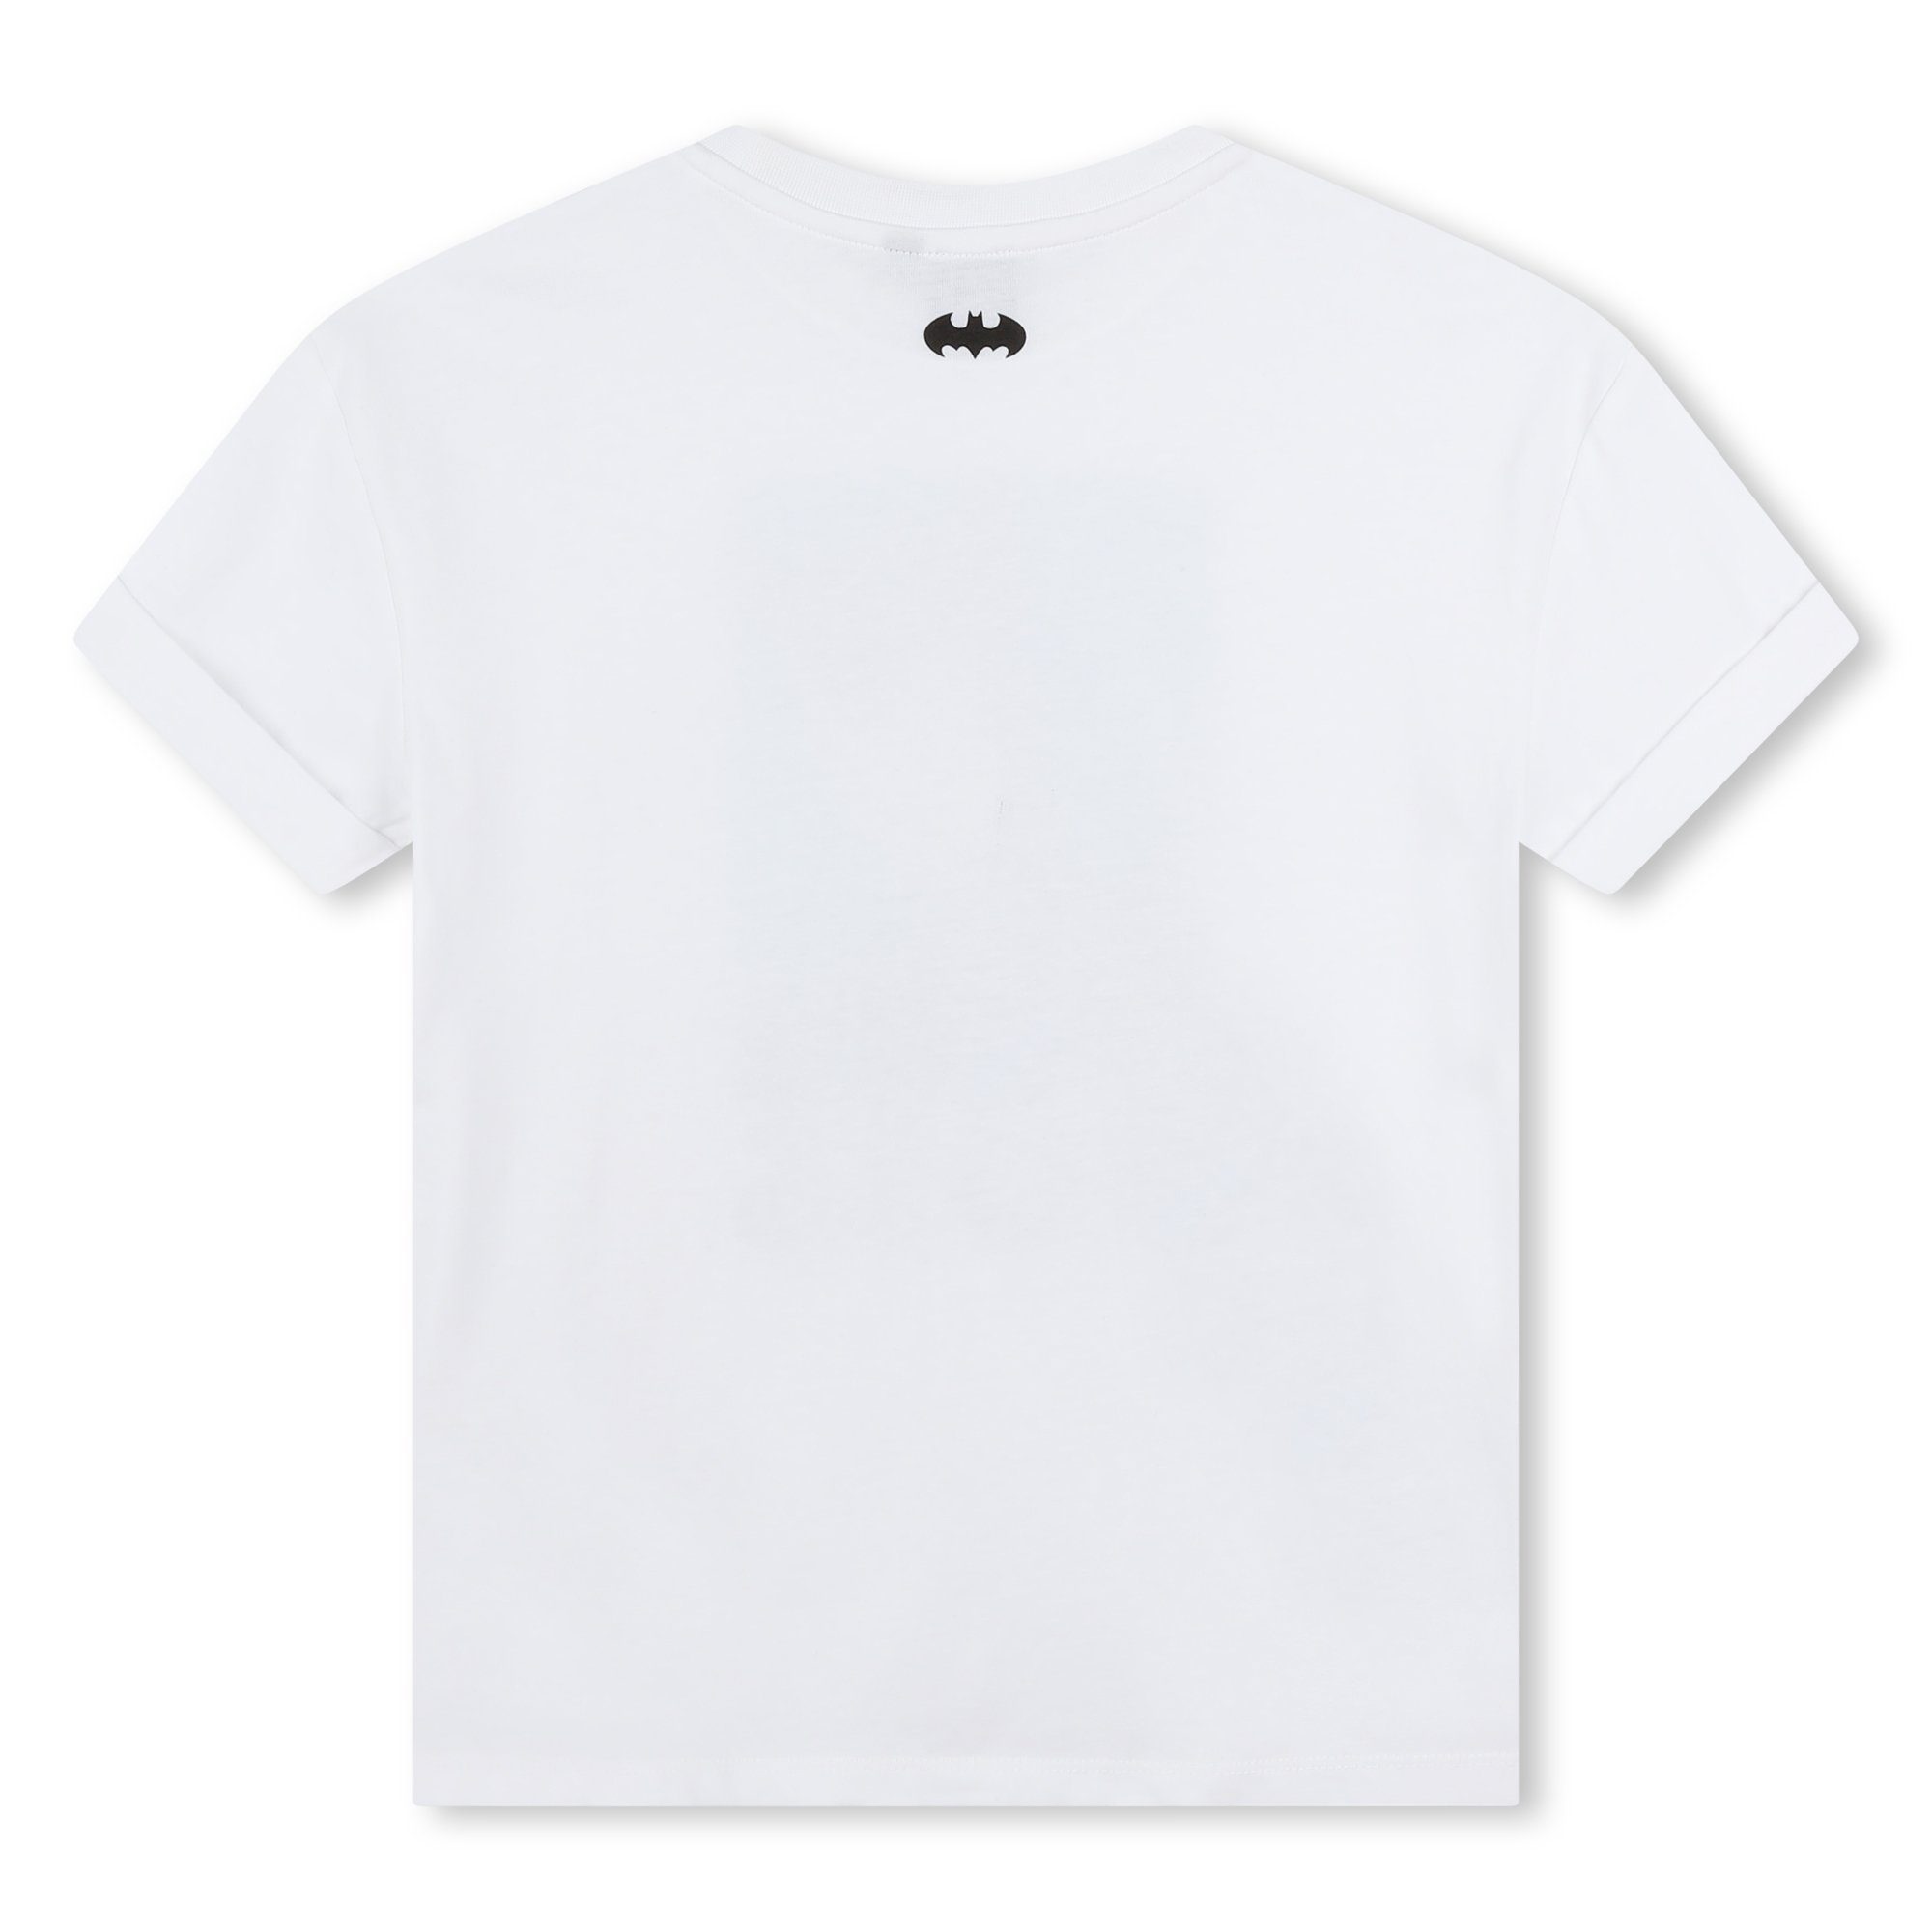 Catwoman Warner T-Shirt BOSS - x Bros Boss Kidswear Print-Shirt